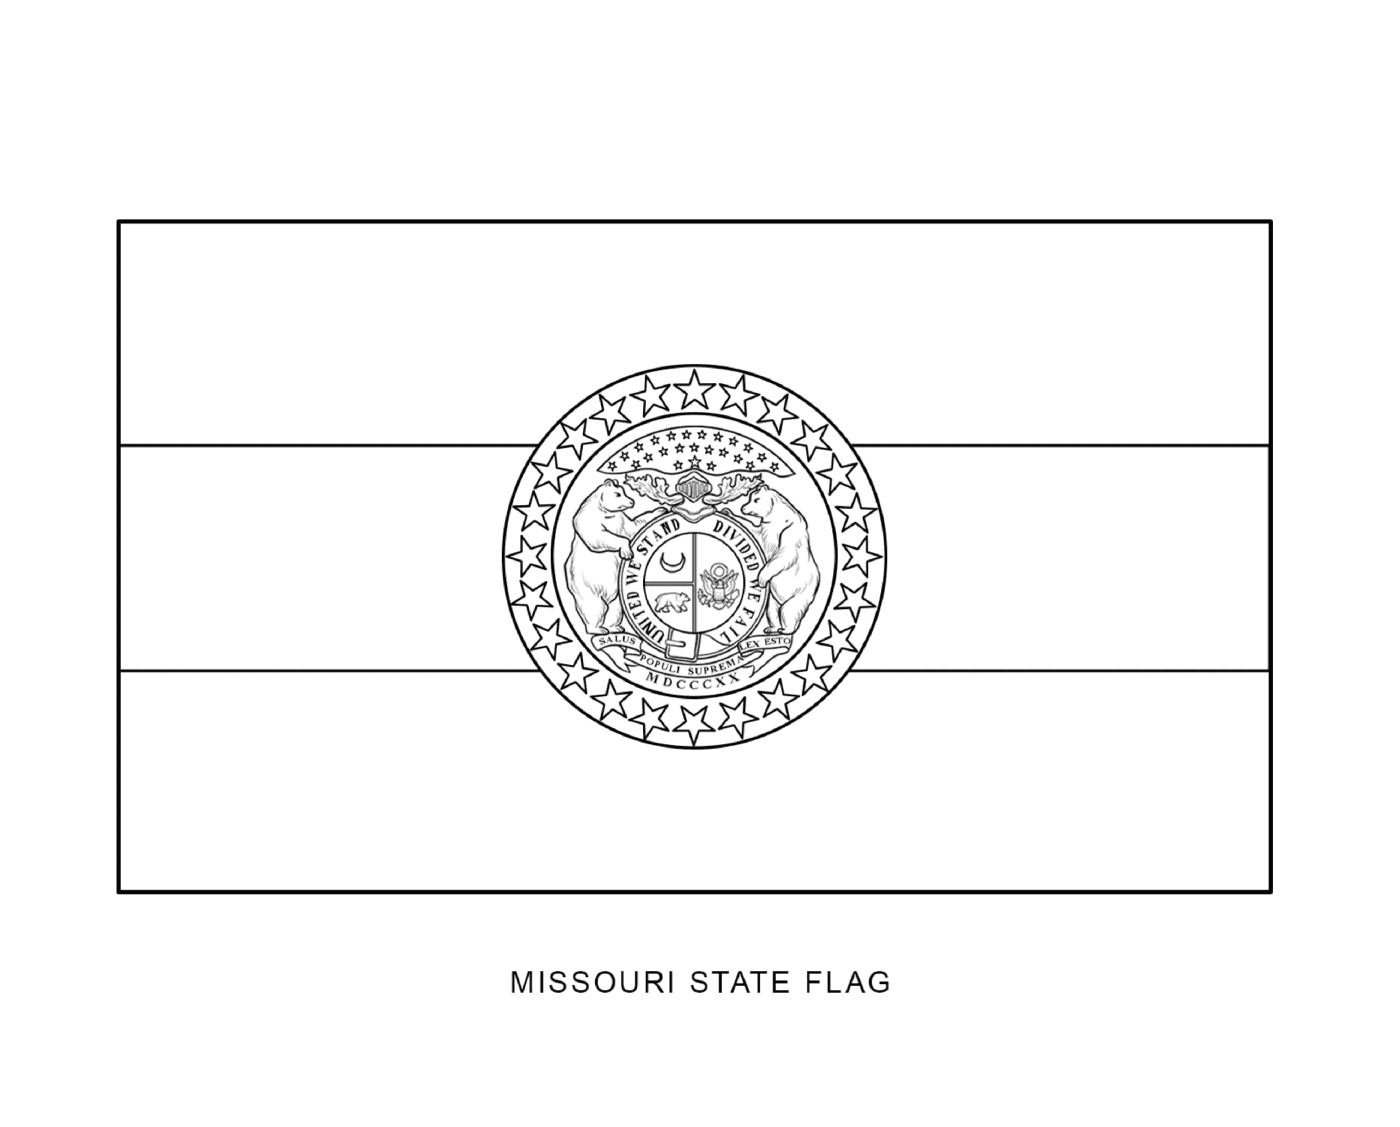  密苏里国旗,用黑墨画画 